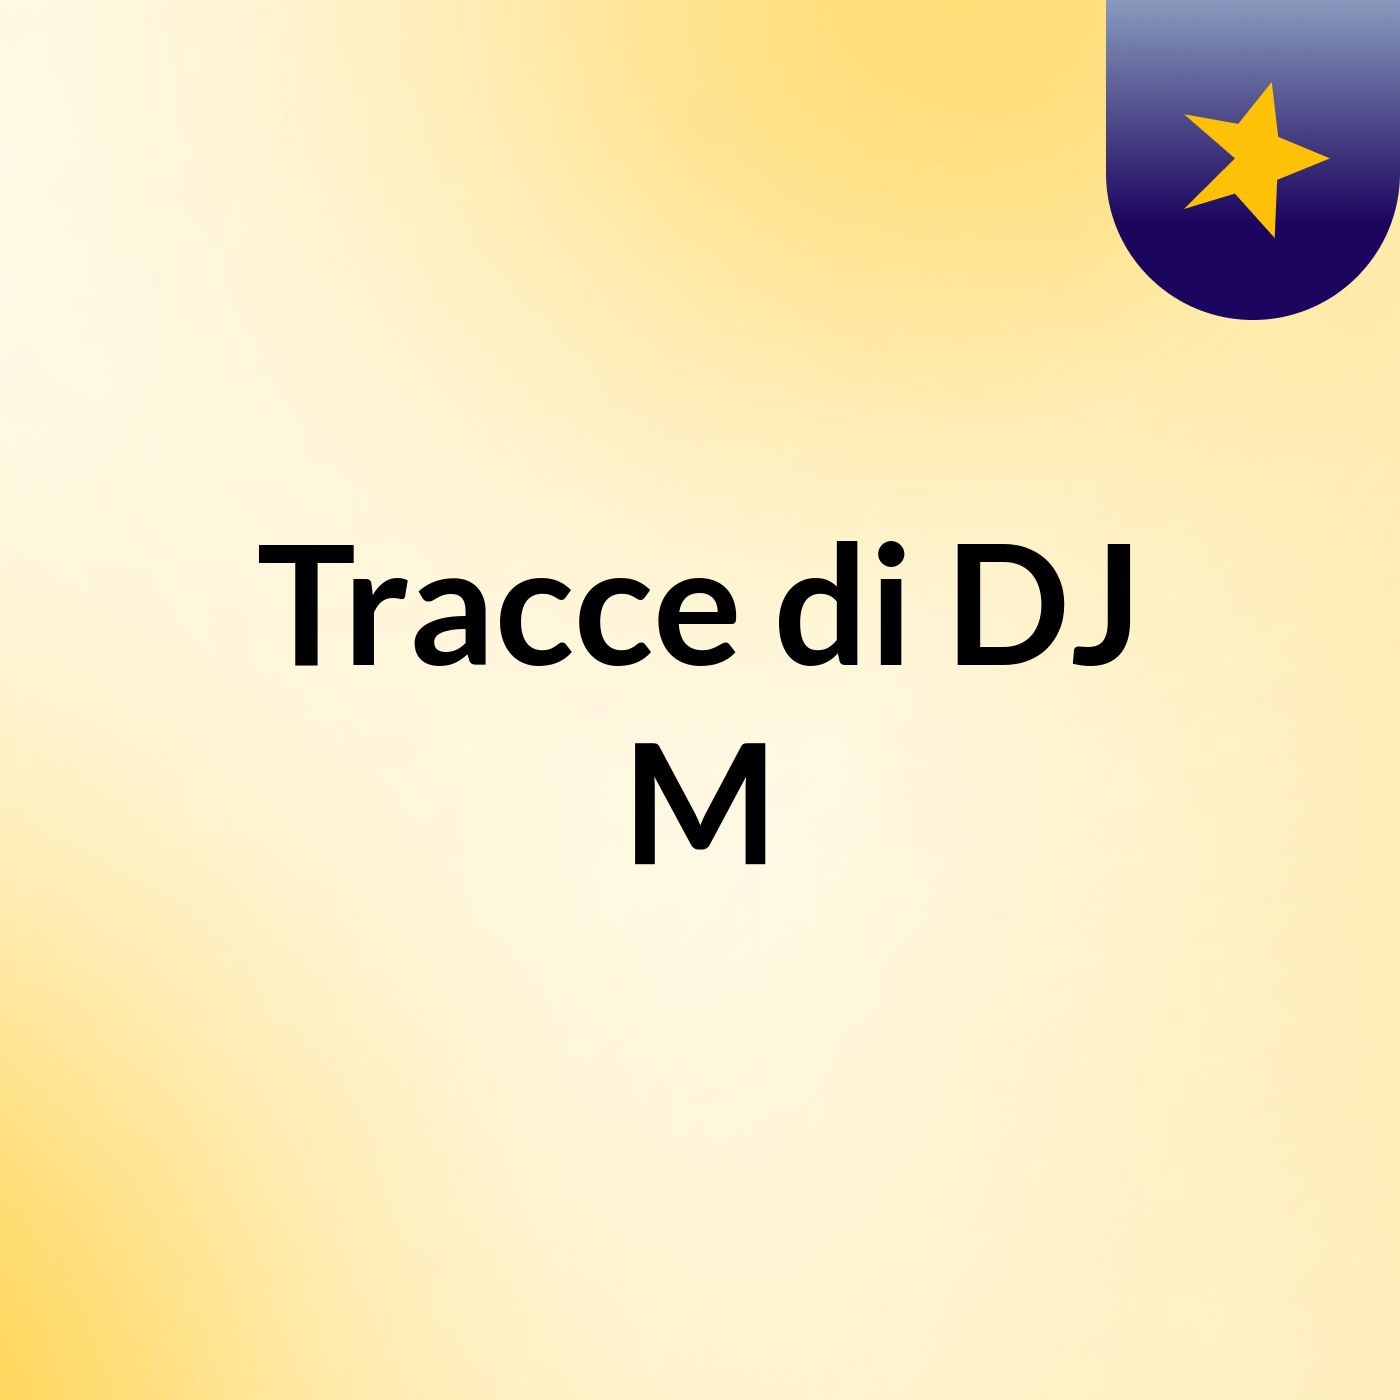 Tracce di DJ M